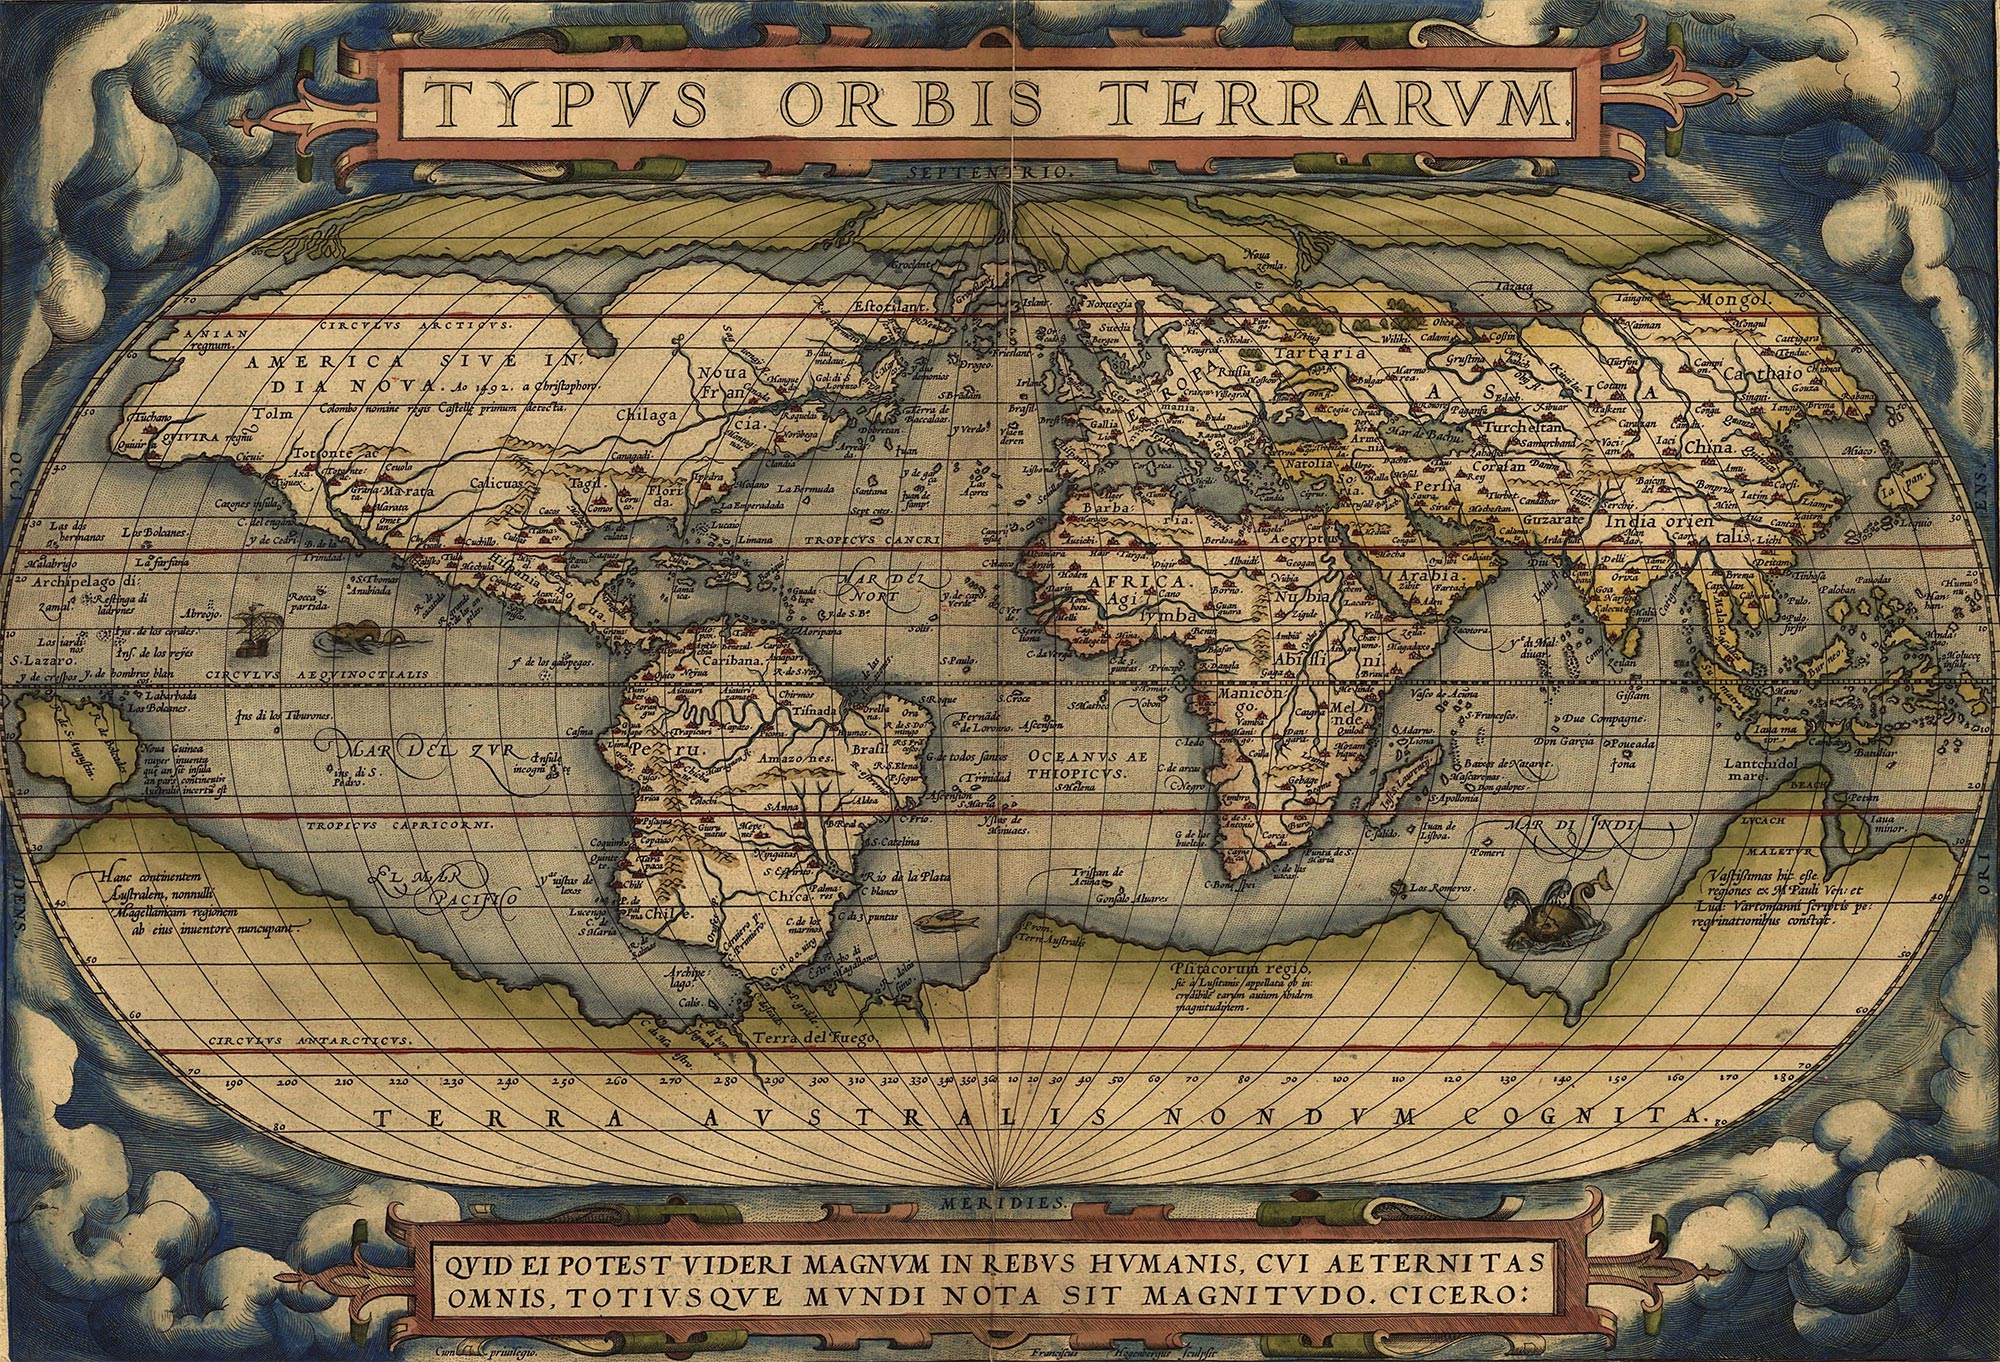 history of cartography essay